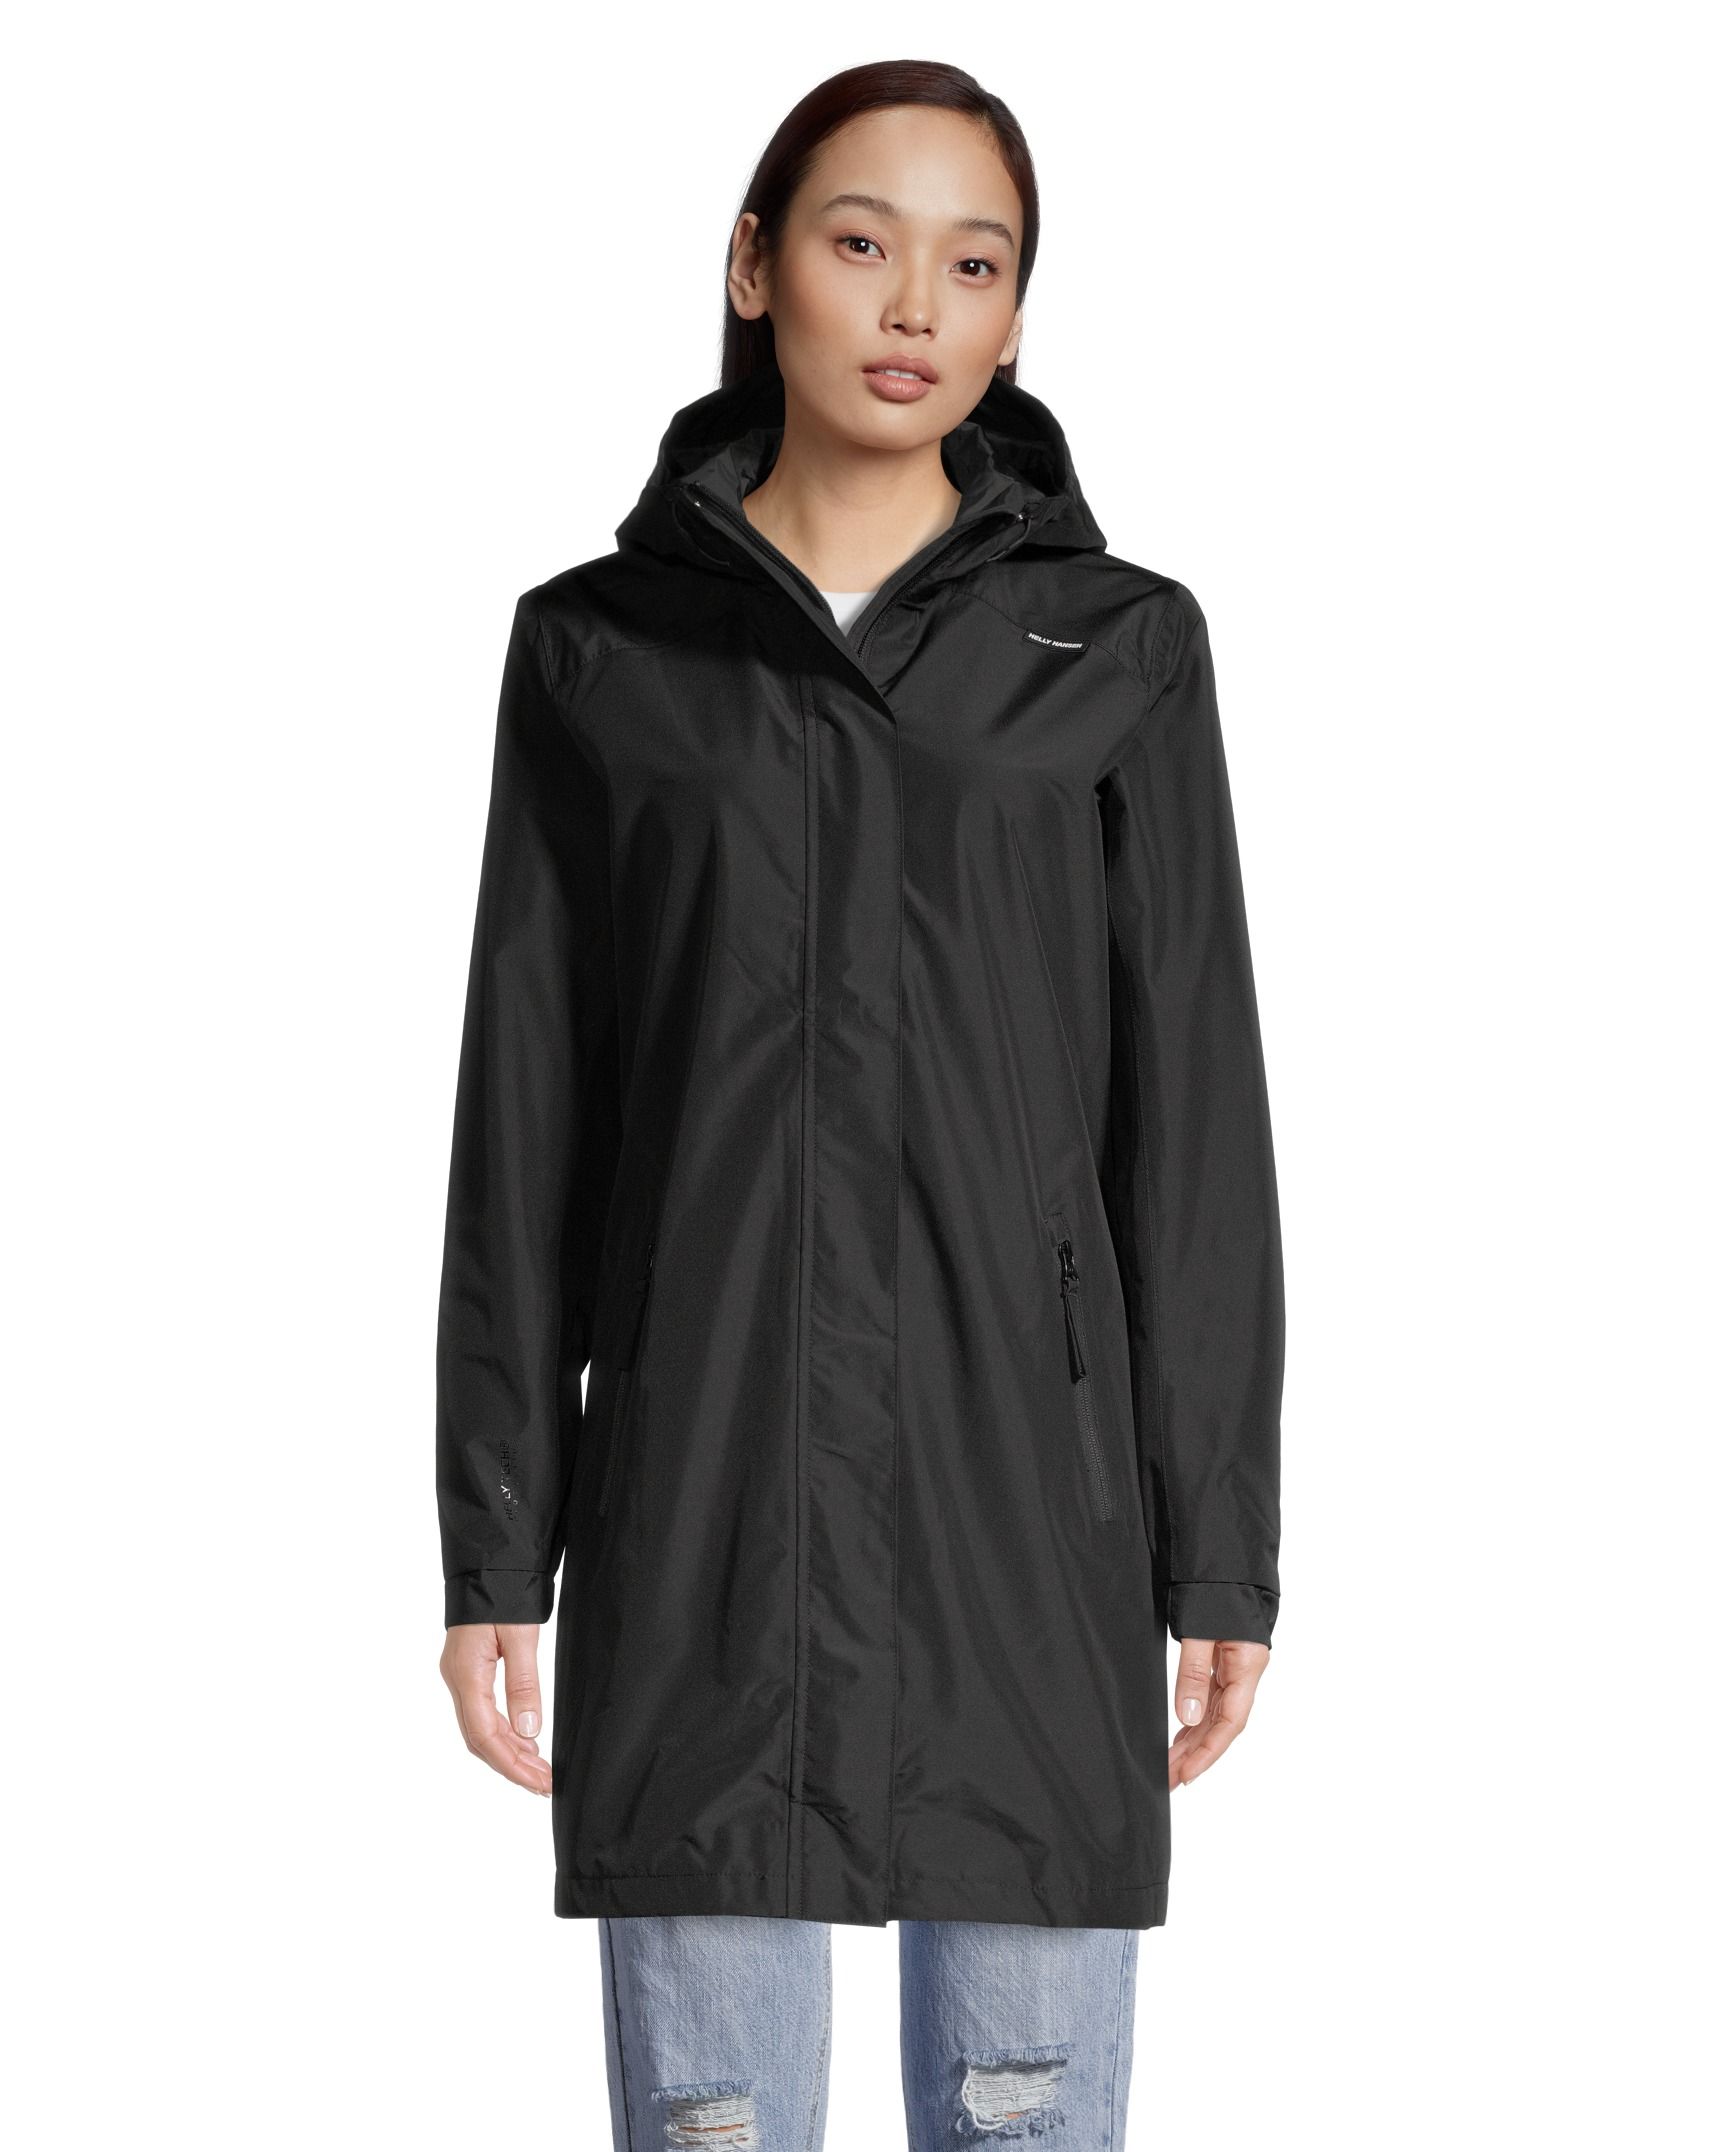 Helly Hansen Women's Valkyrie Hooded Rain Jacket  Waterproof Fleece Lined Long